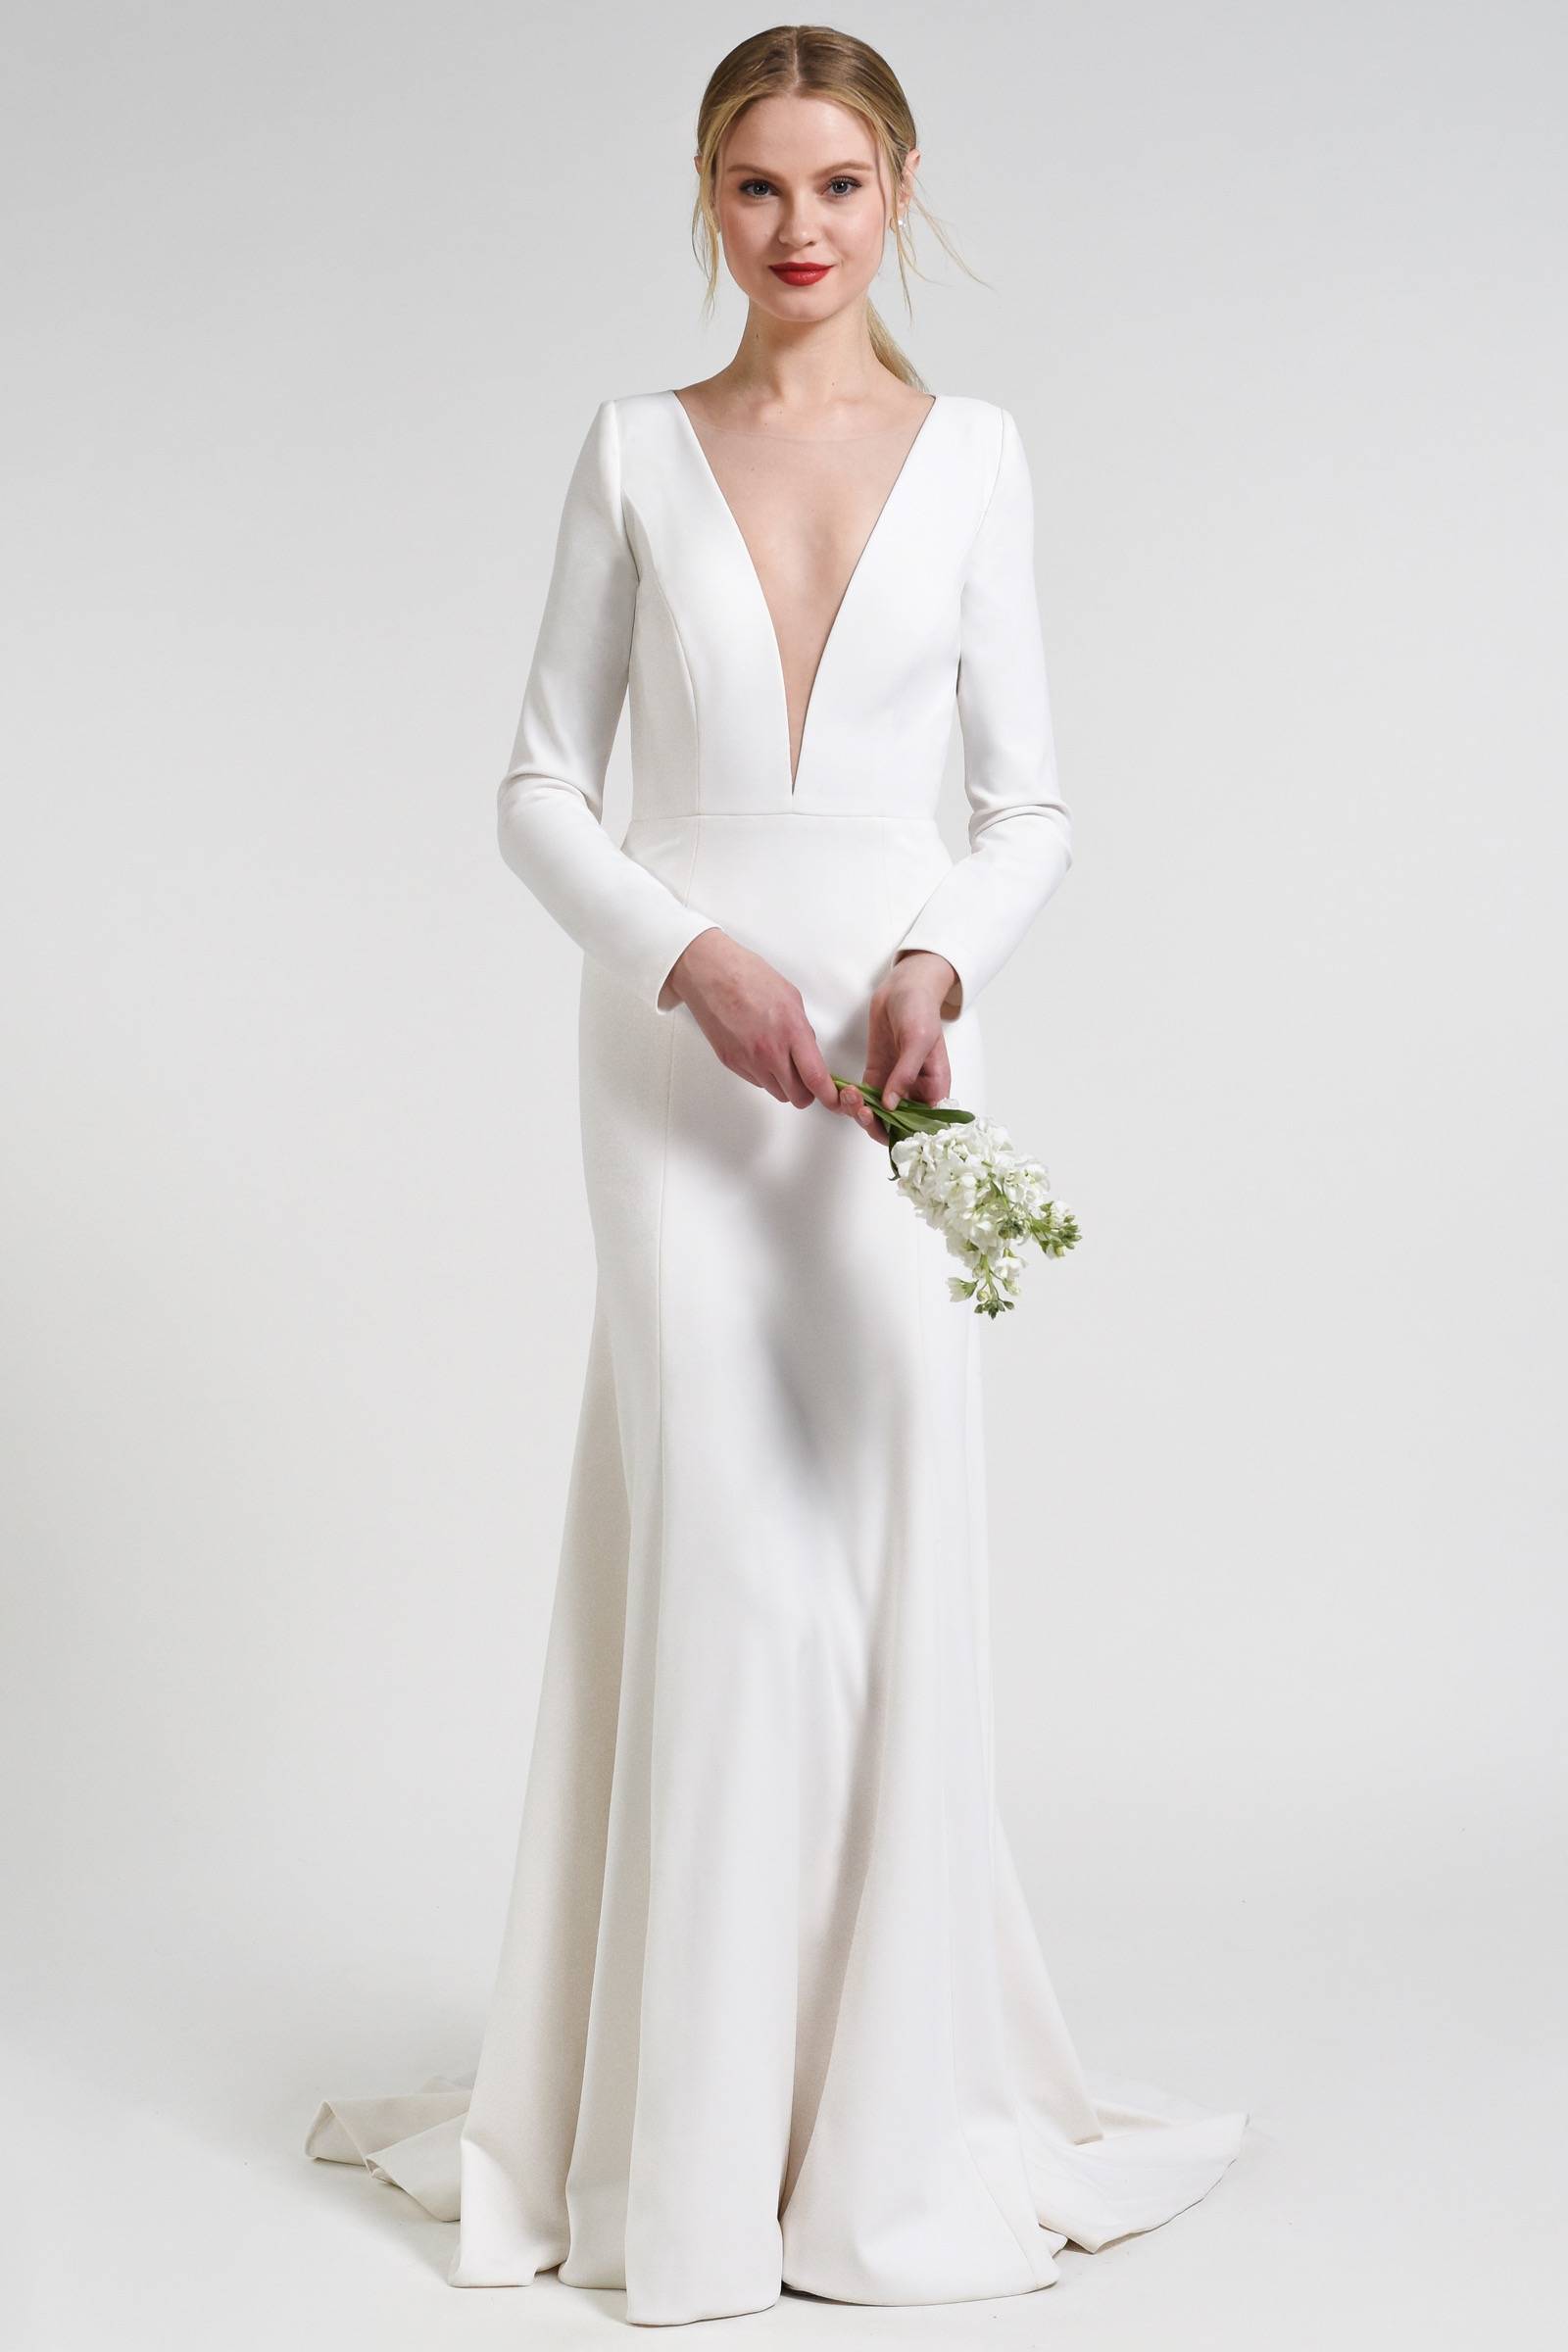 Minimalist wedding gowns by Jenny Yoo